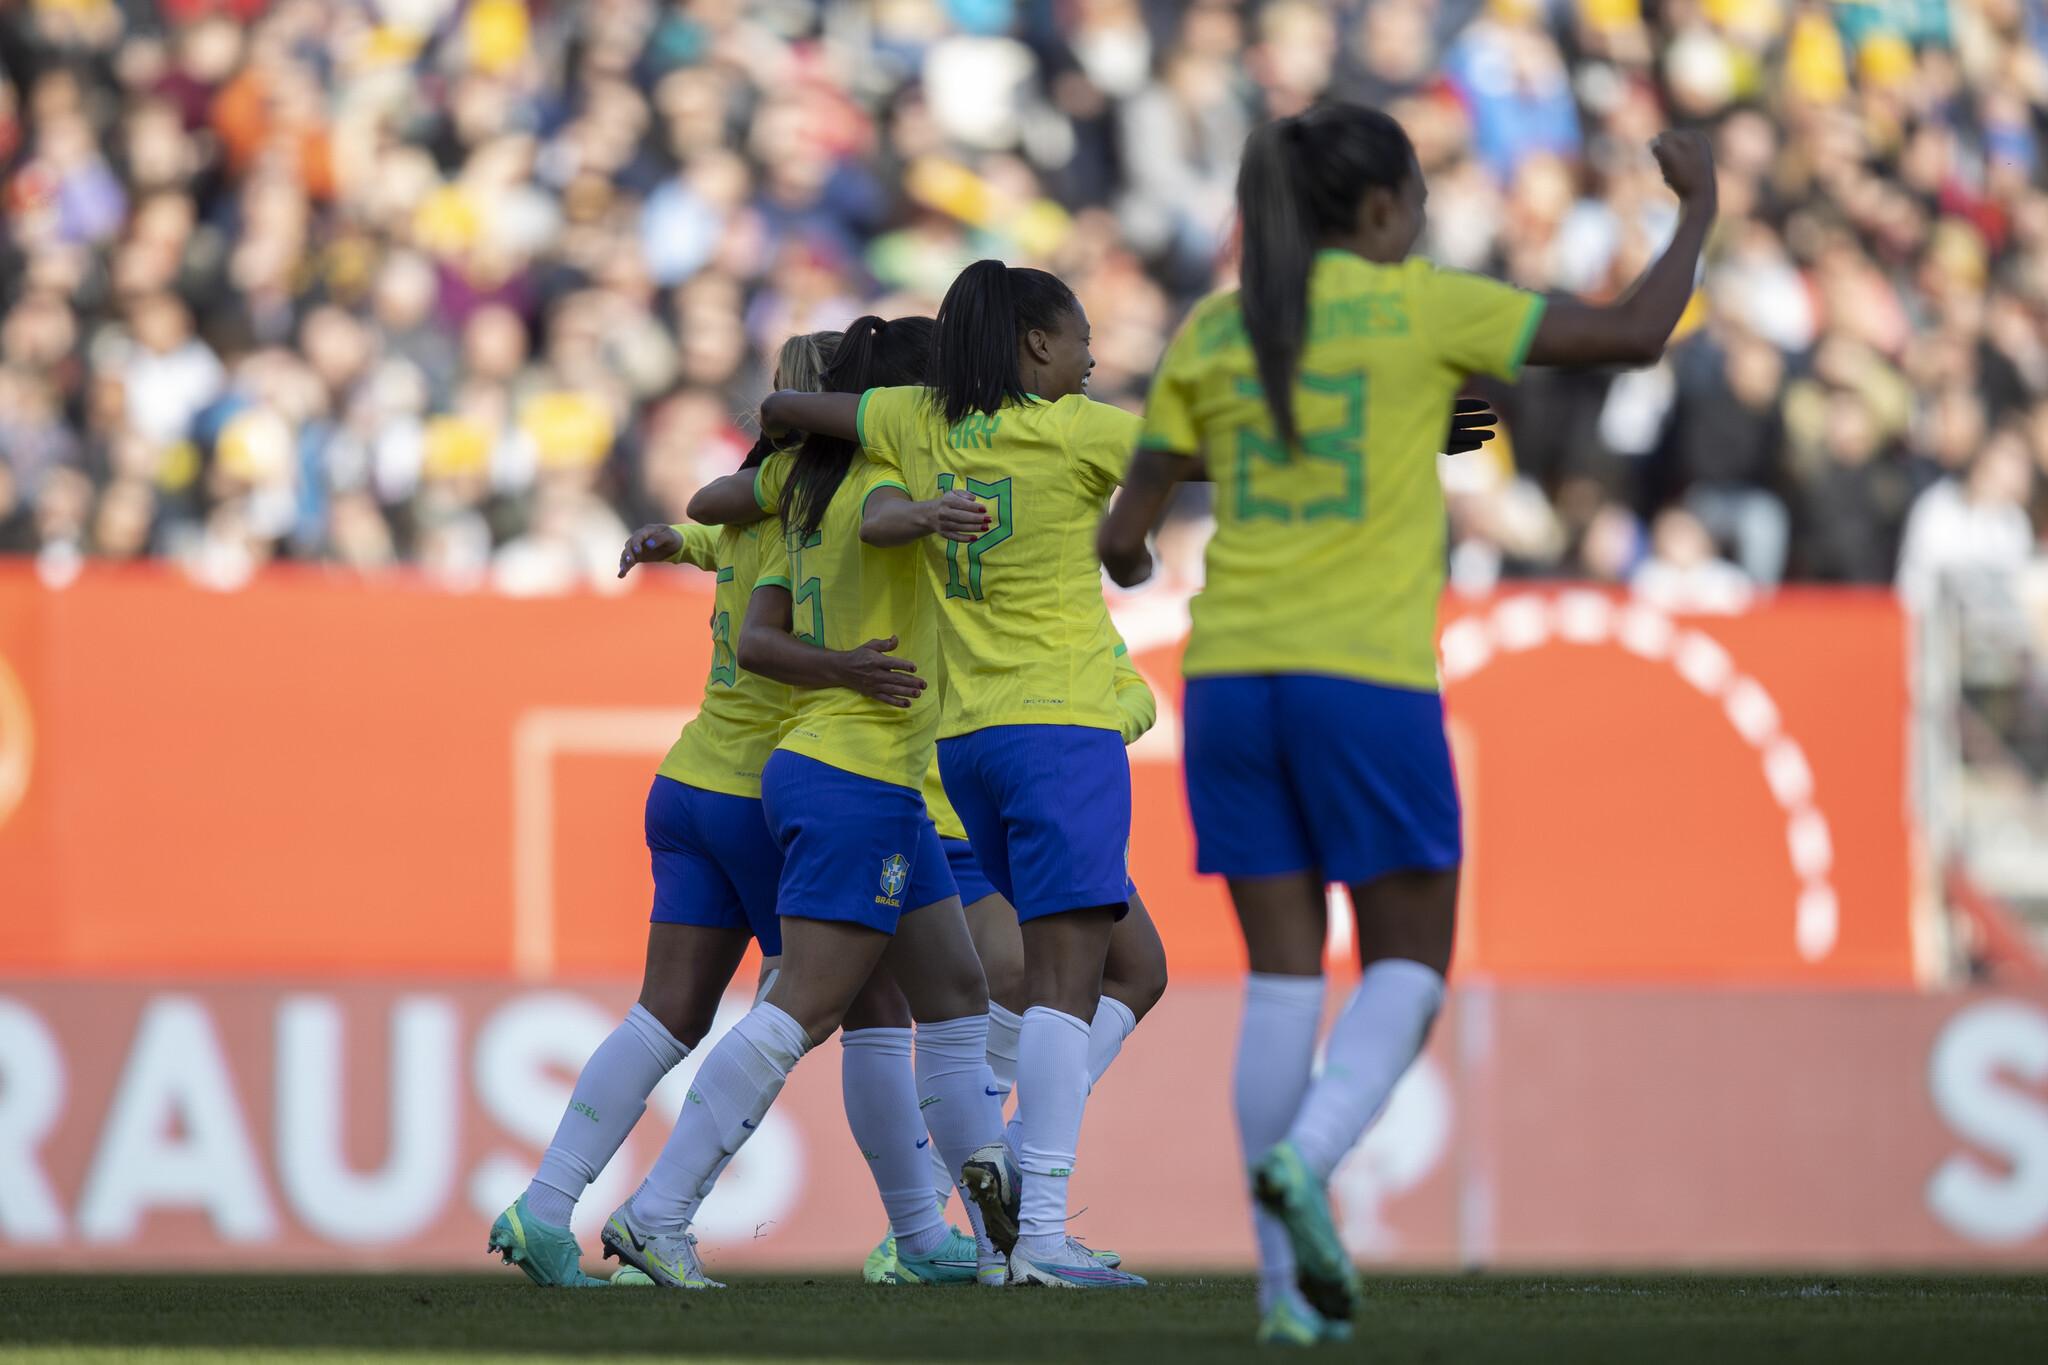 Futebol Feminino - Se liga na convocação da Seleção Brasileira